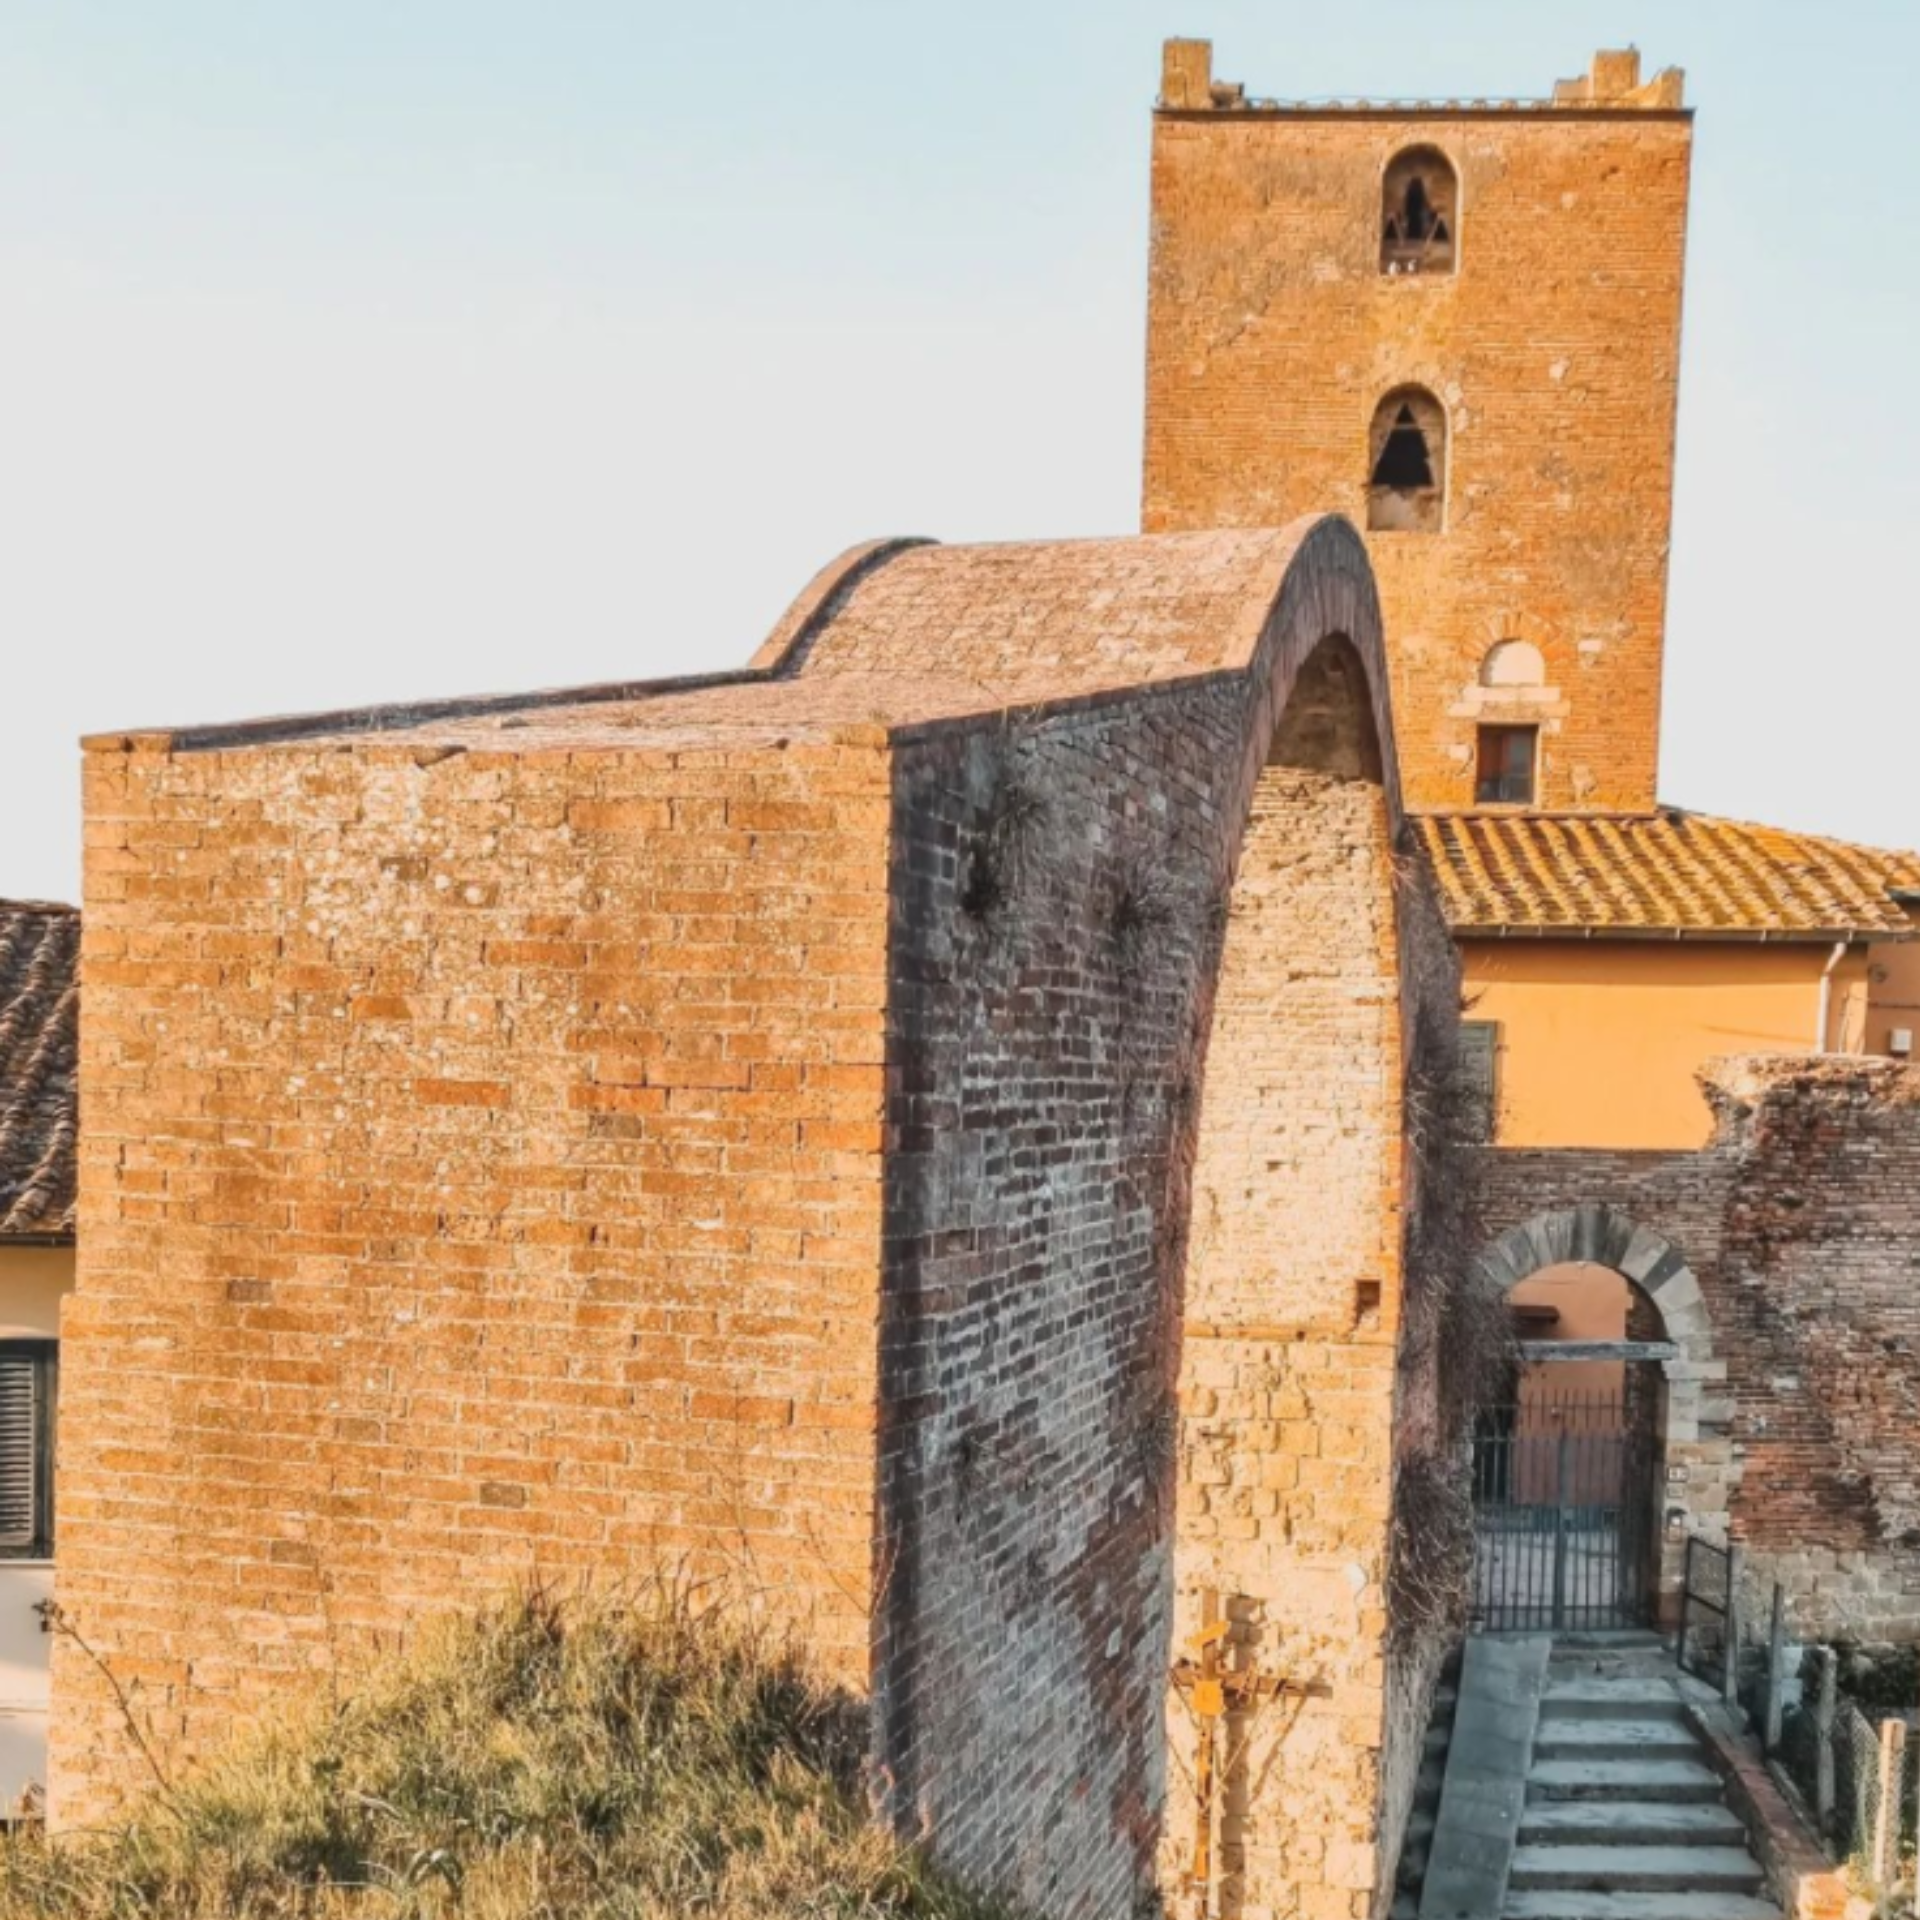 Tower and Arch of Castruccio Castracani